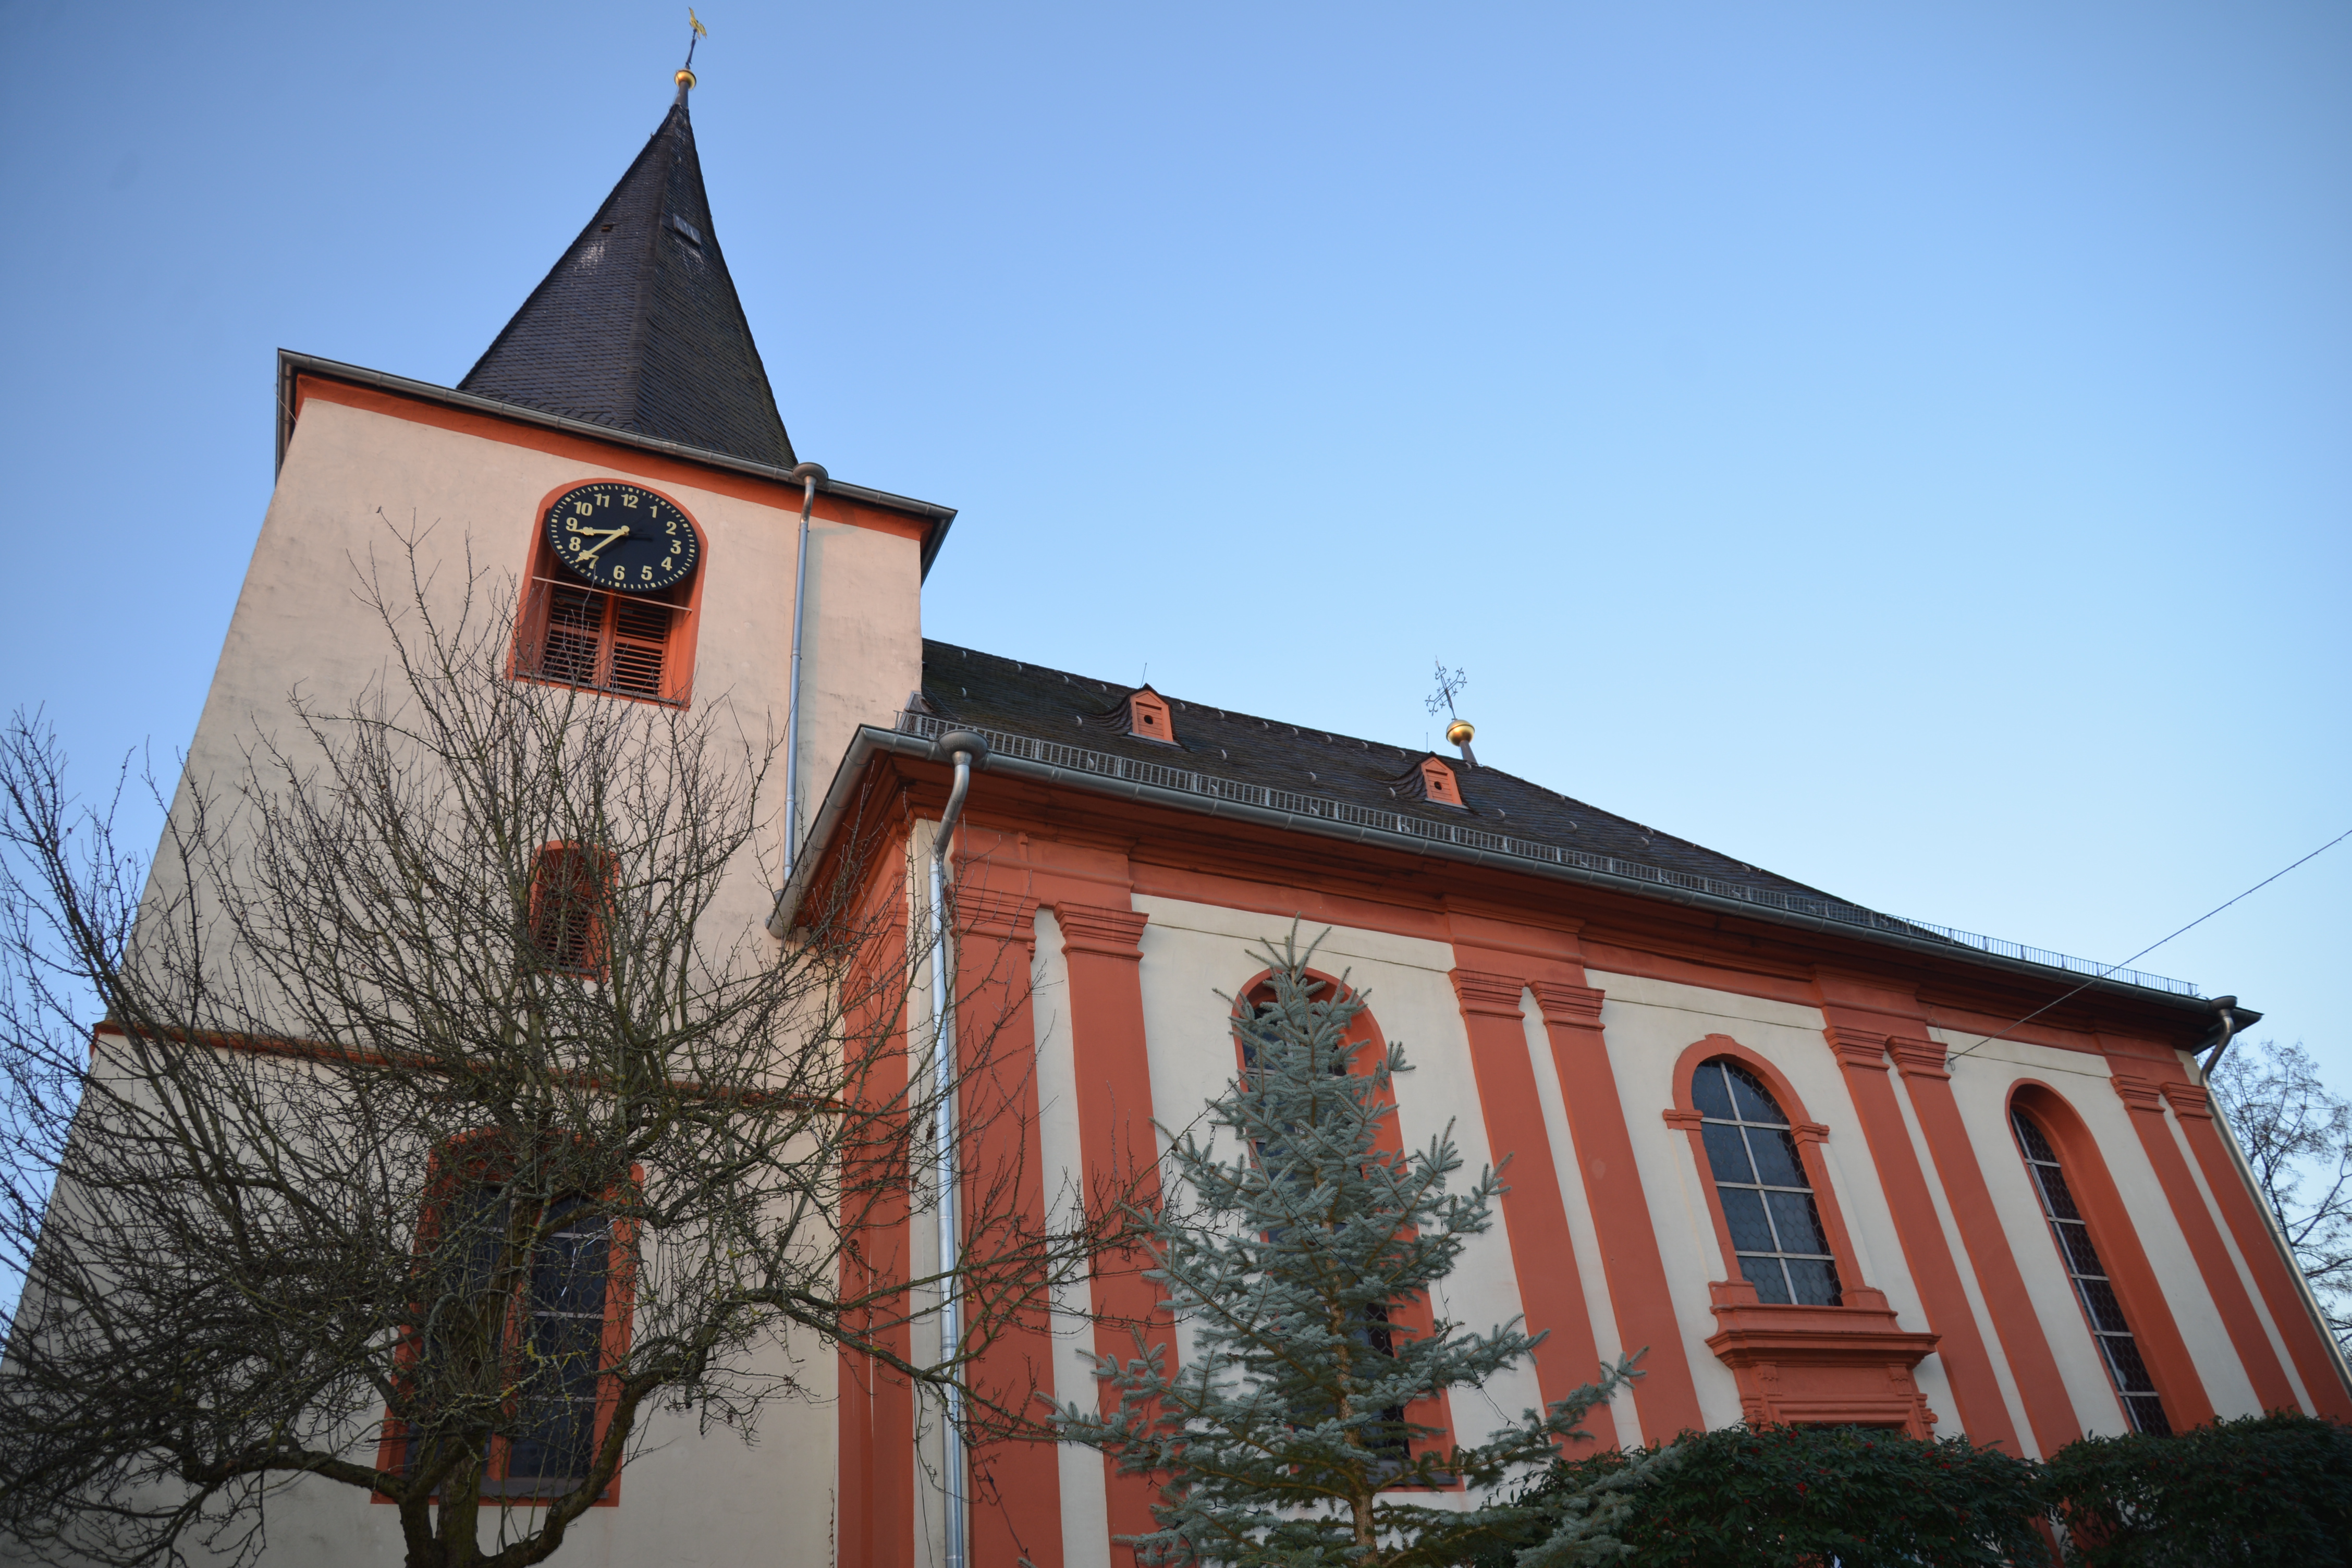 Evangelische Kirche Igstadt - Evangelische Kirchengemeinde Wiesbaden-Igstadt, Altmünsterstraße 8 in Wiesbaden